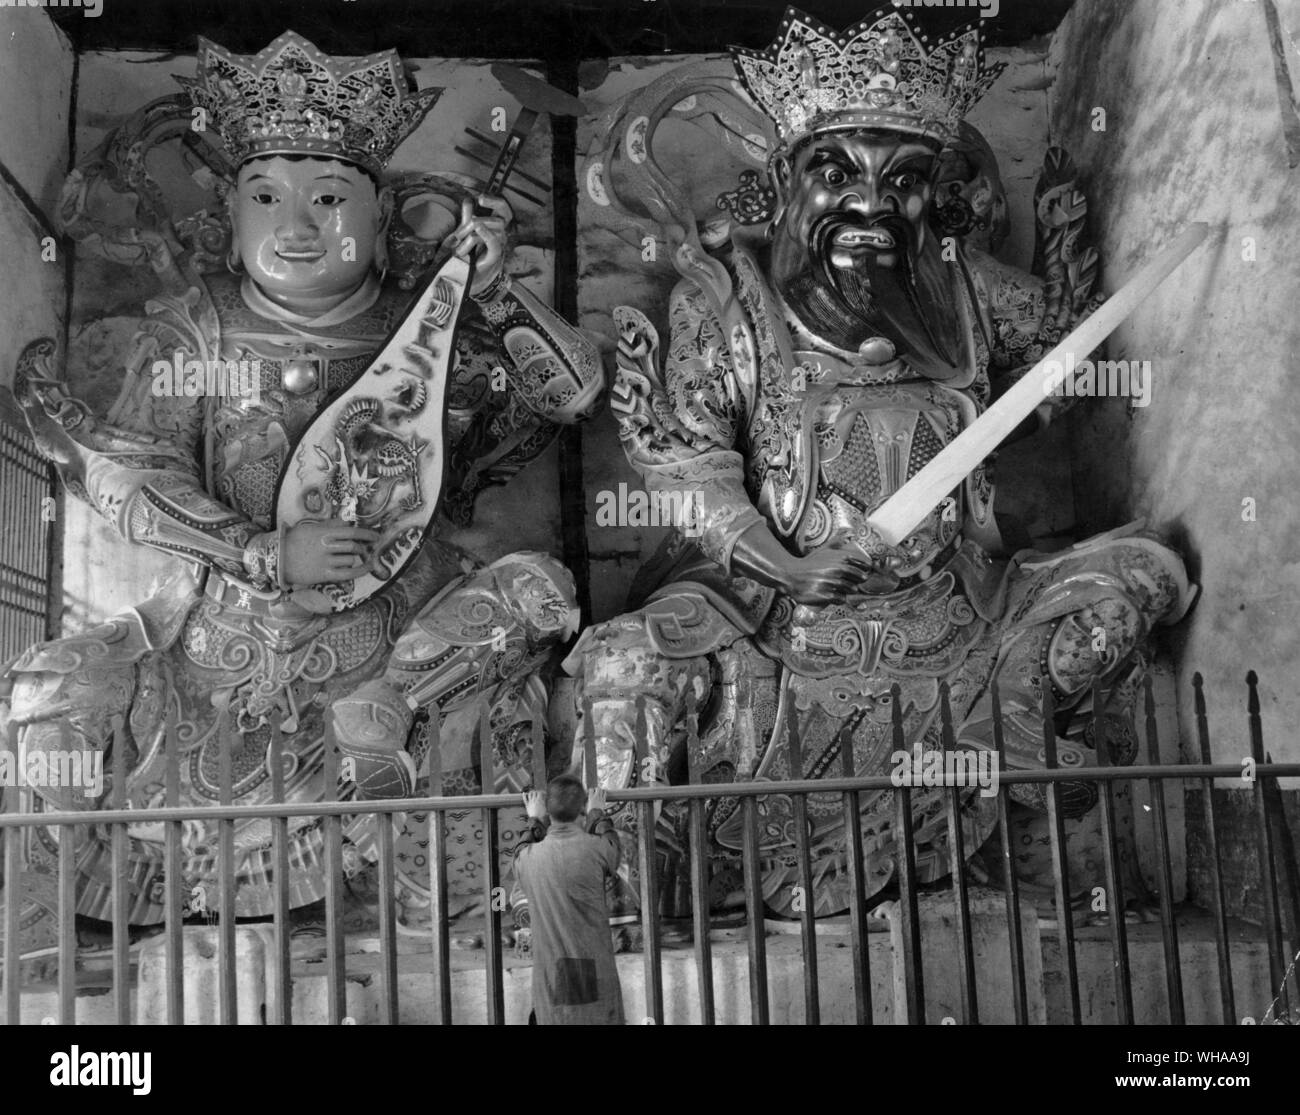 Die jährlichen Wallfahrten der chinesischen Völker zu den Buddhistischen Tempel, in denen sie anbeten, Gautama Buddha, seine Idole und Wächter, wie nationale Feiertage für Sie. Ganze Familien Jung und Alt sich zu Fuß für die lange und mühsame Wanderung zu den Hügeln, wo die Tempel in luftiger Einsamkeit Stand aufgebaut. . Bild zeigt einen buddhistischen Mönch Zentrum steht betete vor dem übergroßen geschnitzt und hoch dekorierte gekrönt Statuen der beiden buddhistischen Symbole möglicherweise Darstellung von gut und böse Geist Stockfoto